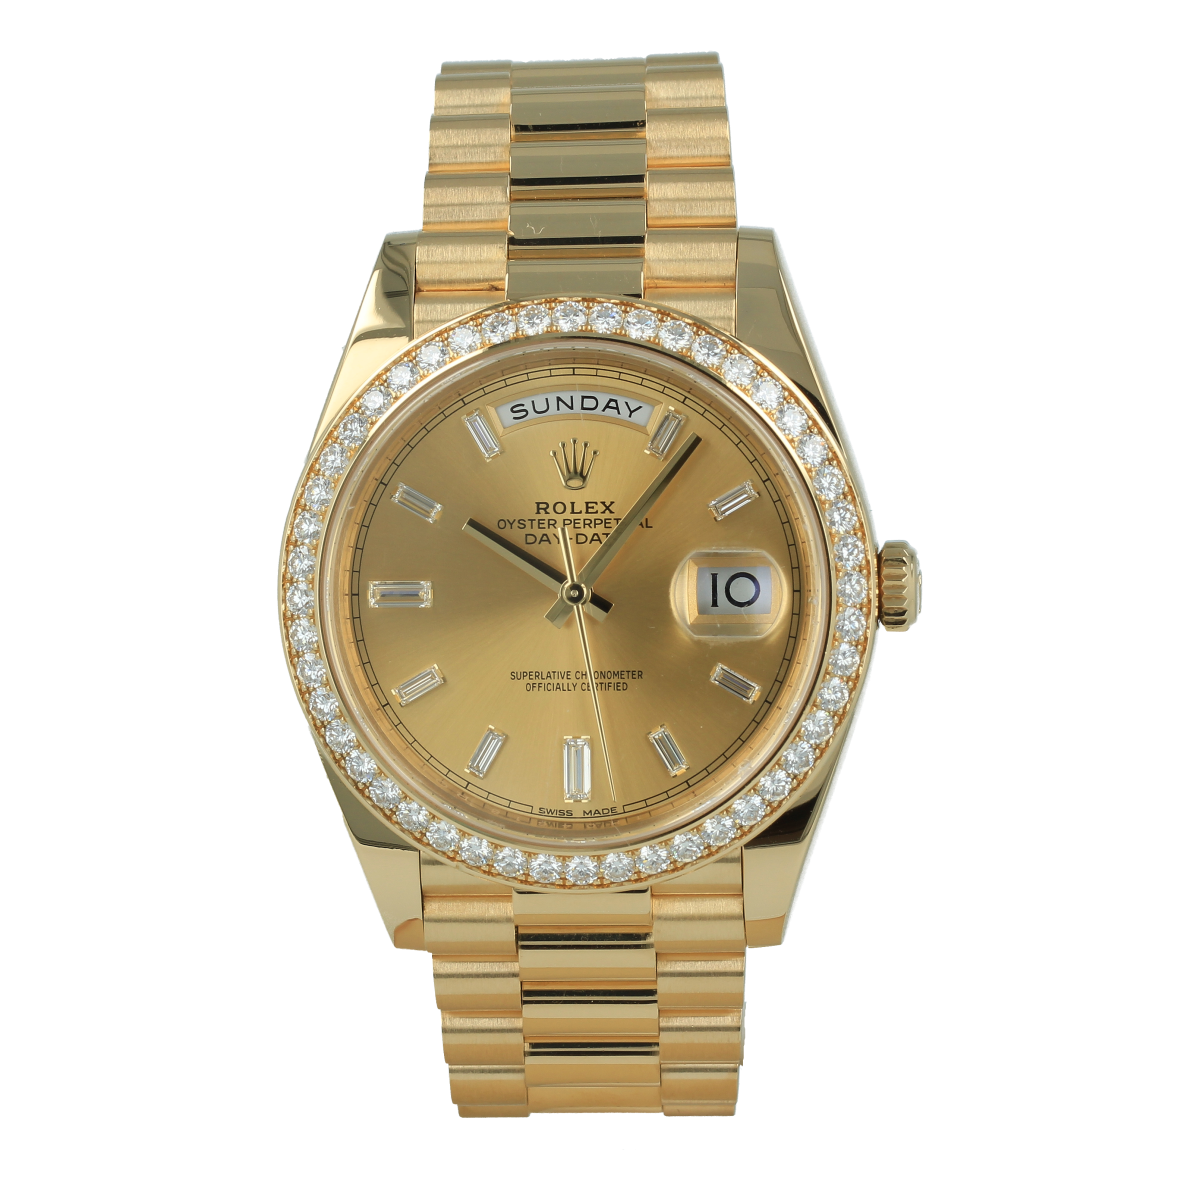 Rolex Day-Date 228238 40mm Oro Amarillo Esfera Blanca *Nuevo a Estrenar* | Comprar reloj Rolex de segunda mano